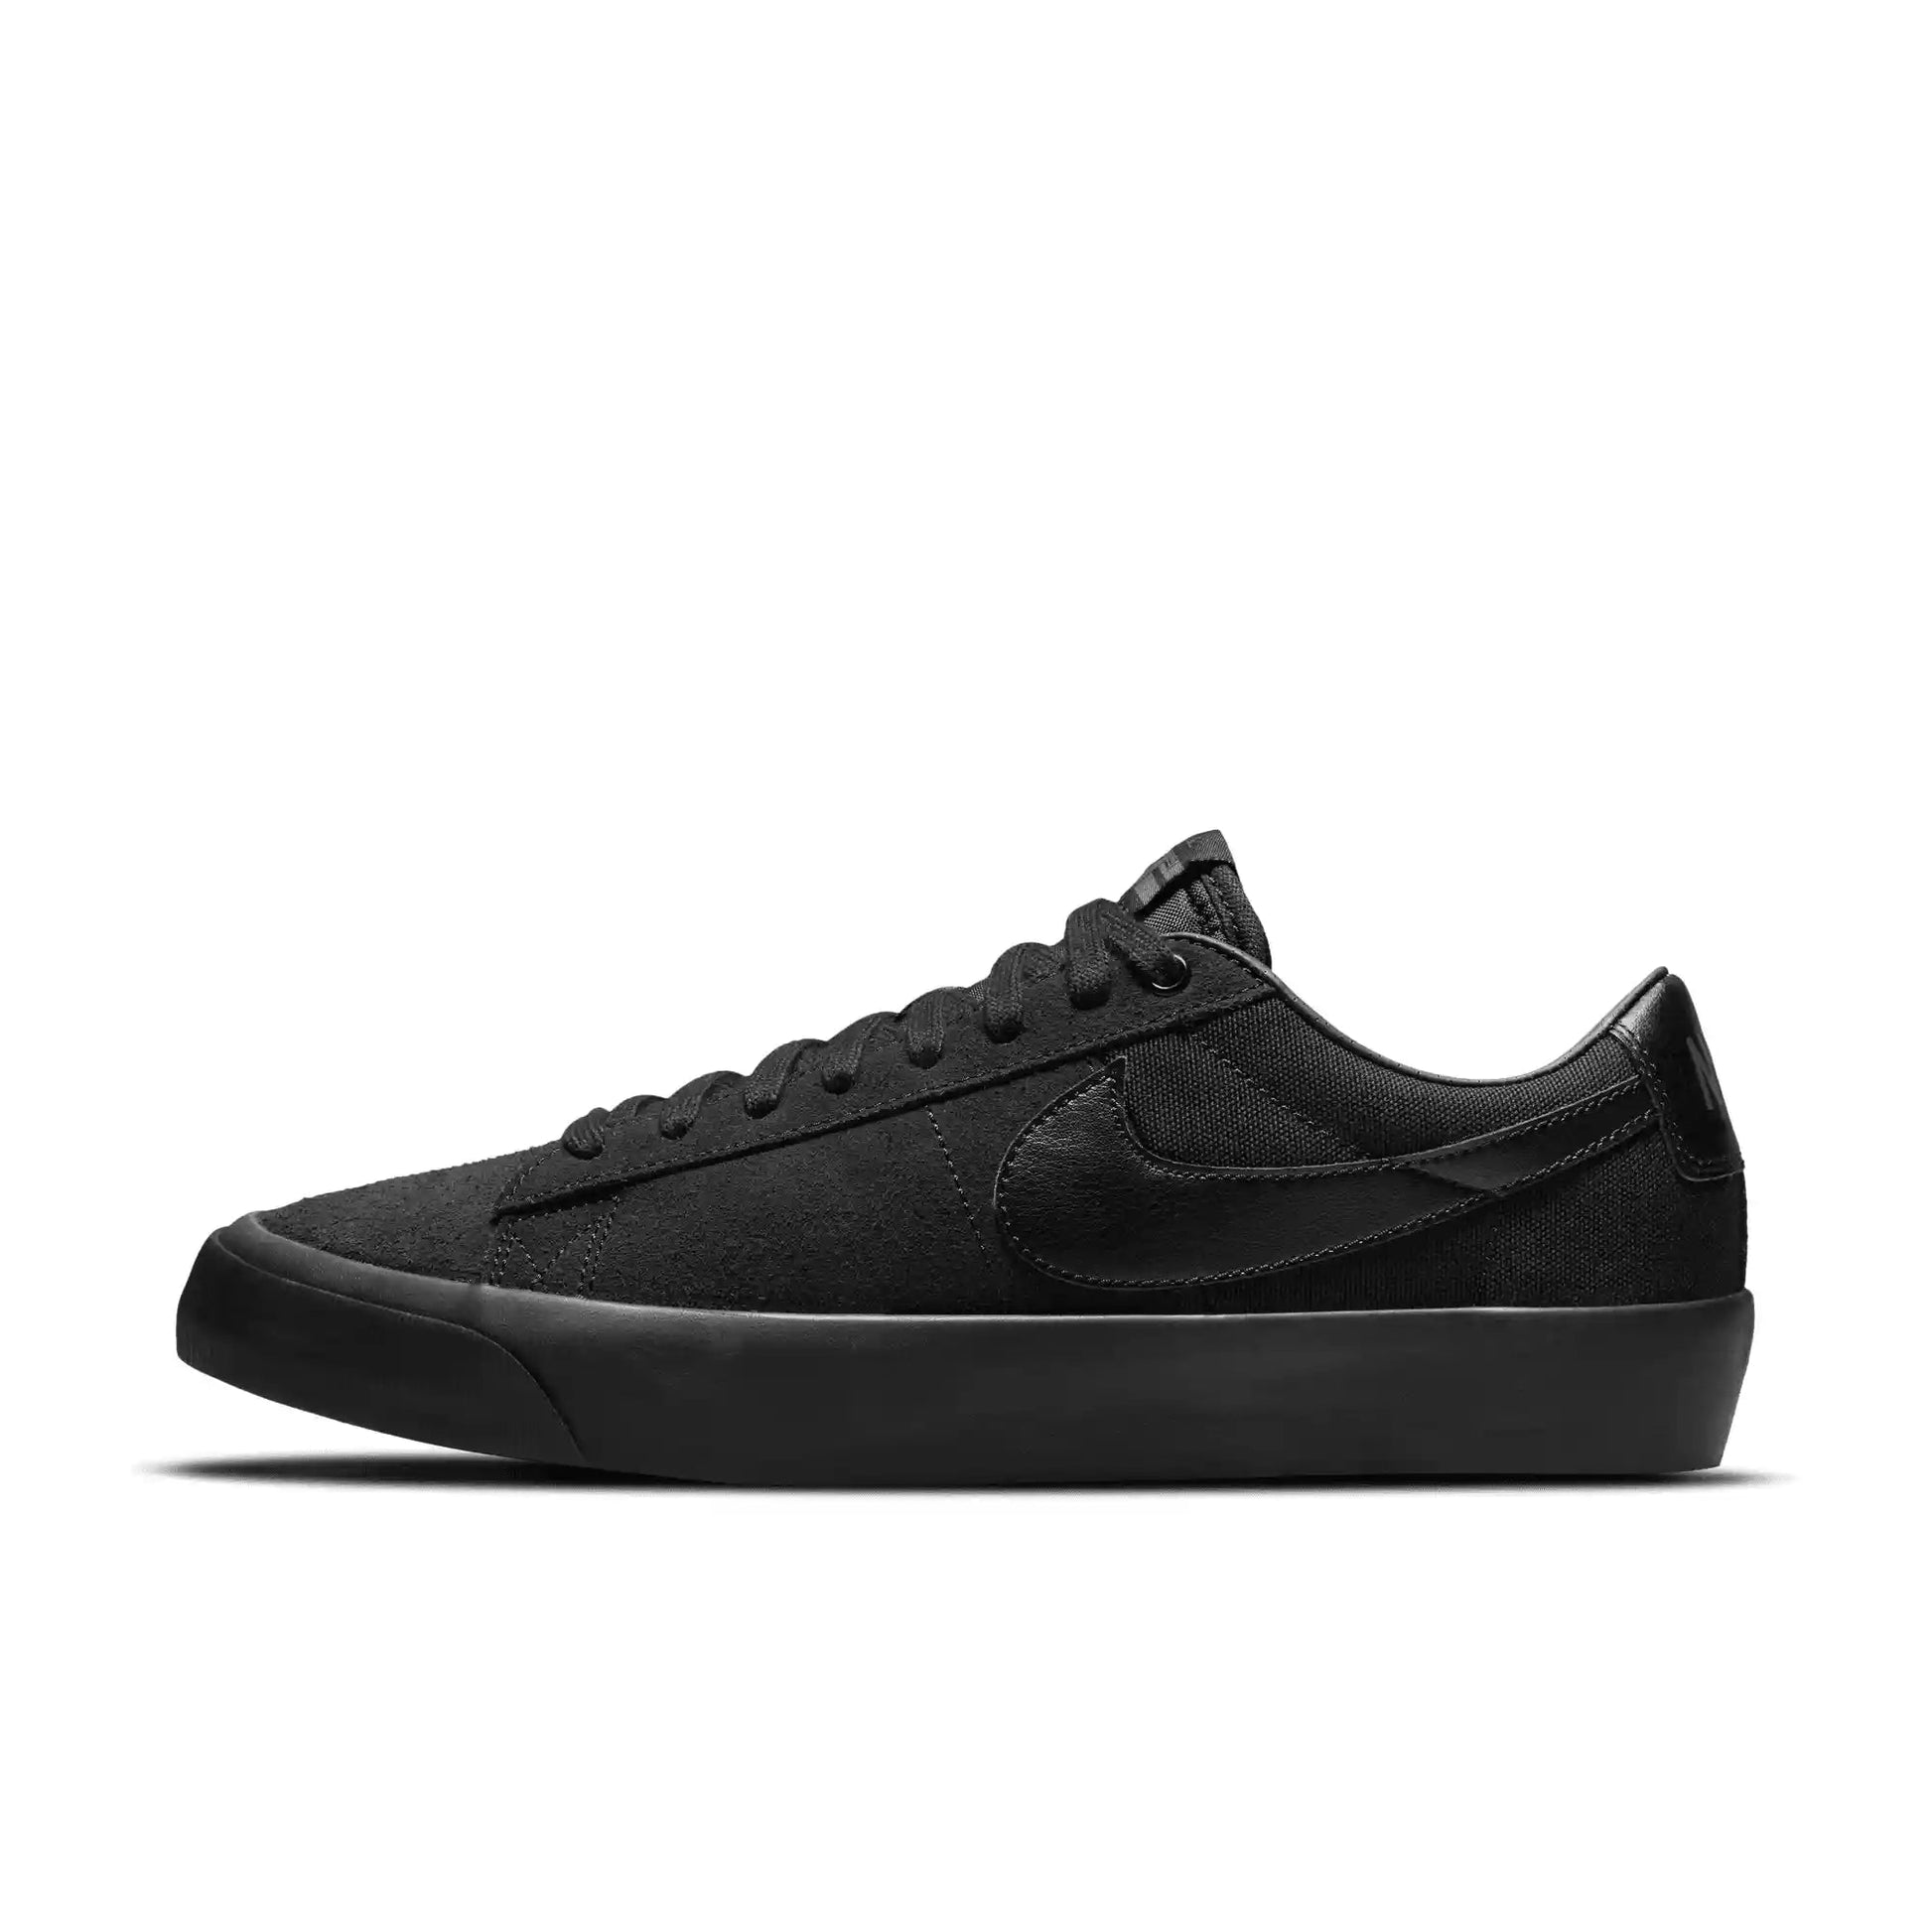 Nike SB Zoom Blazer Low Pro GT, black/black-black-anthracite - Tiki Room Skateboards - 9